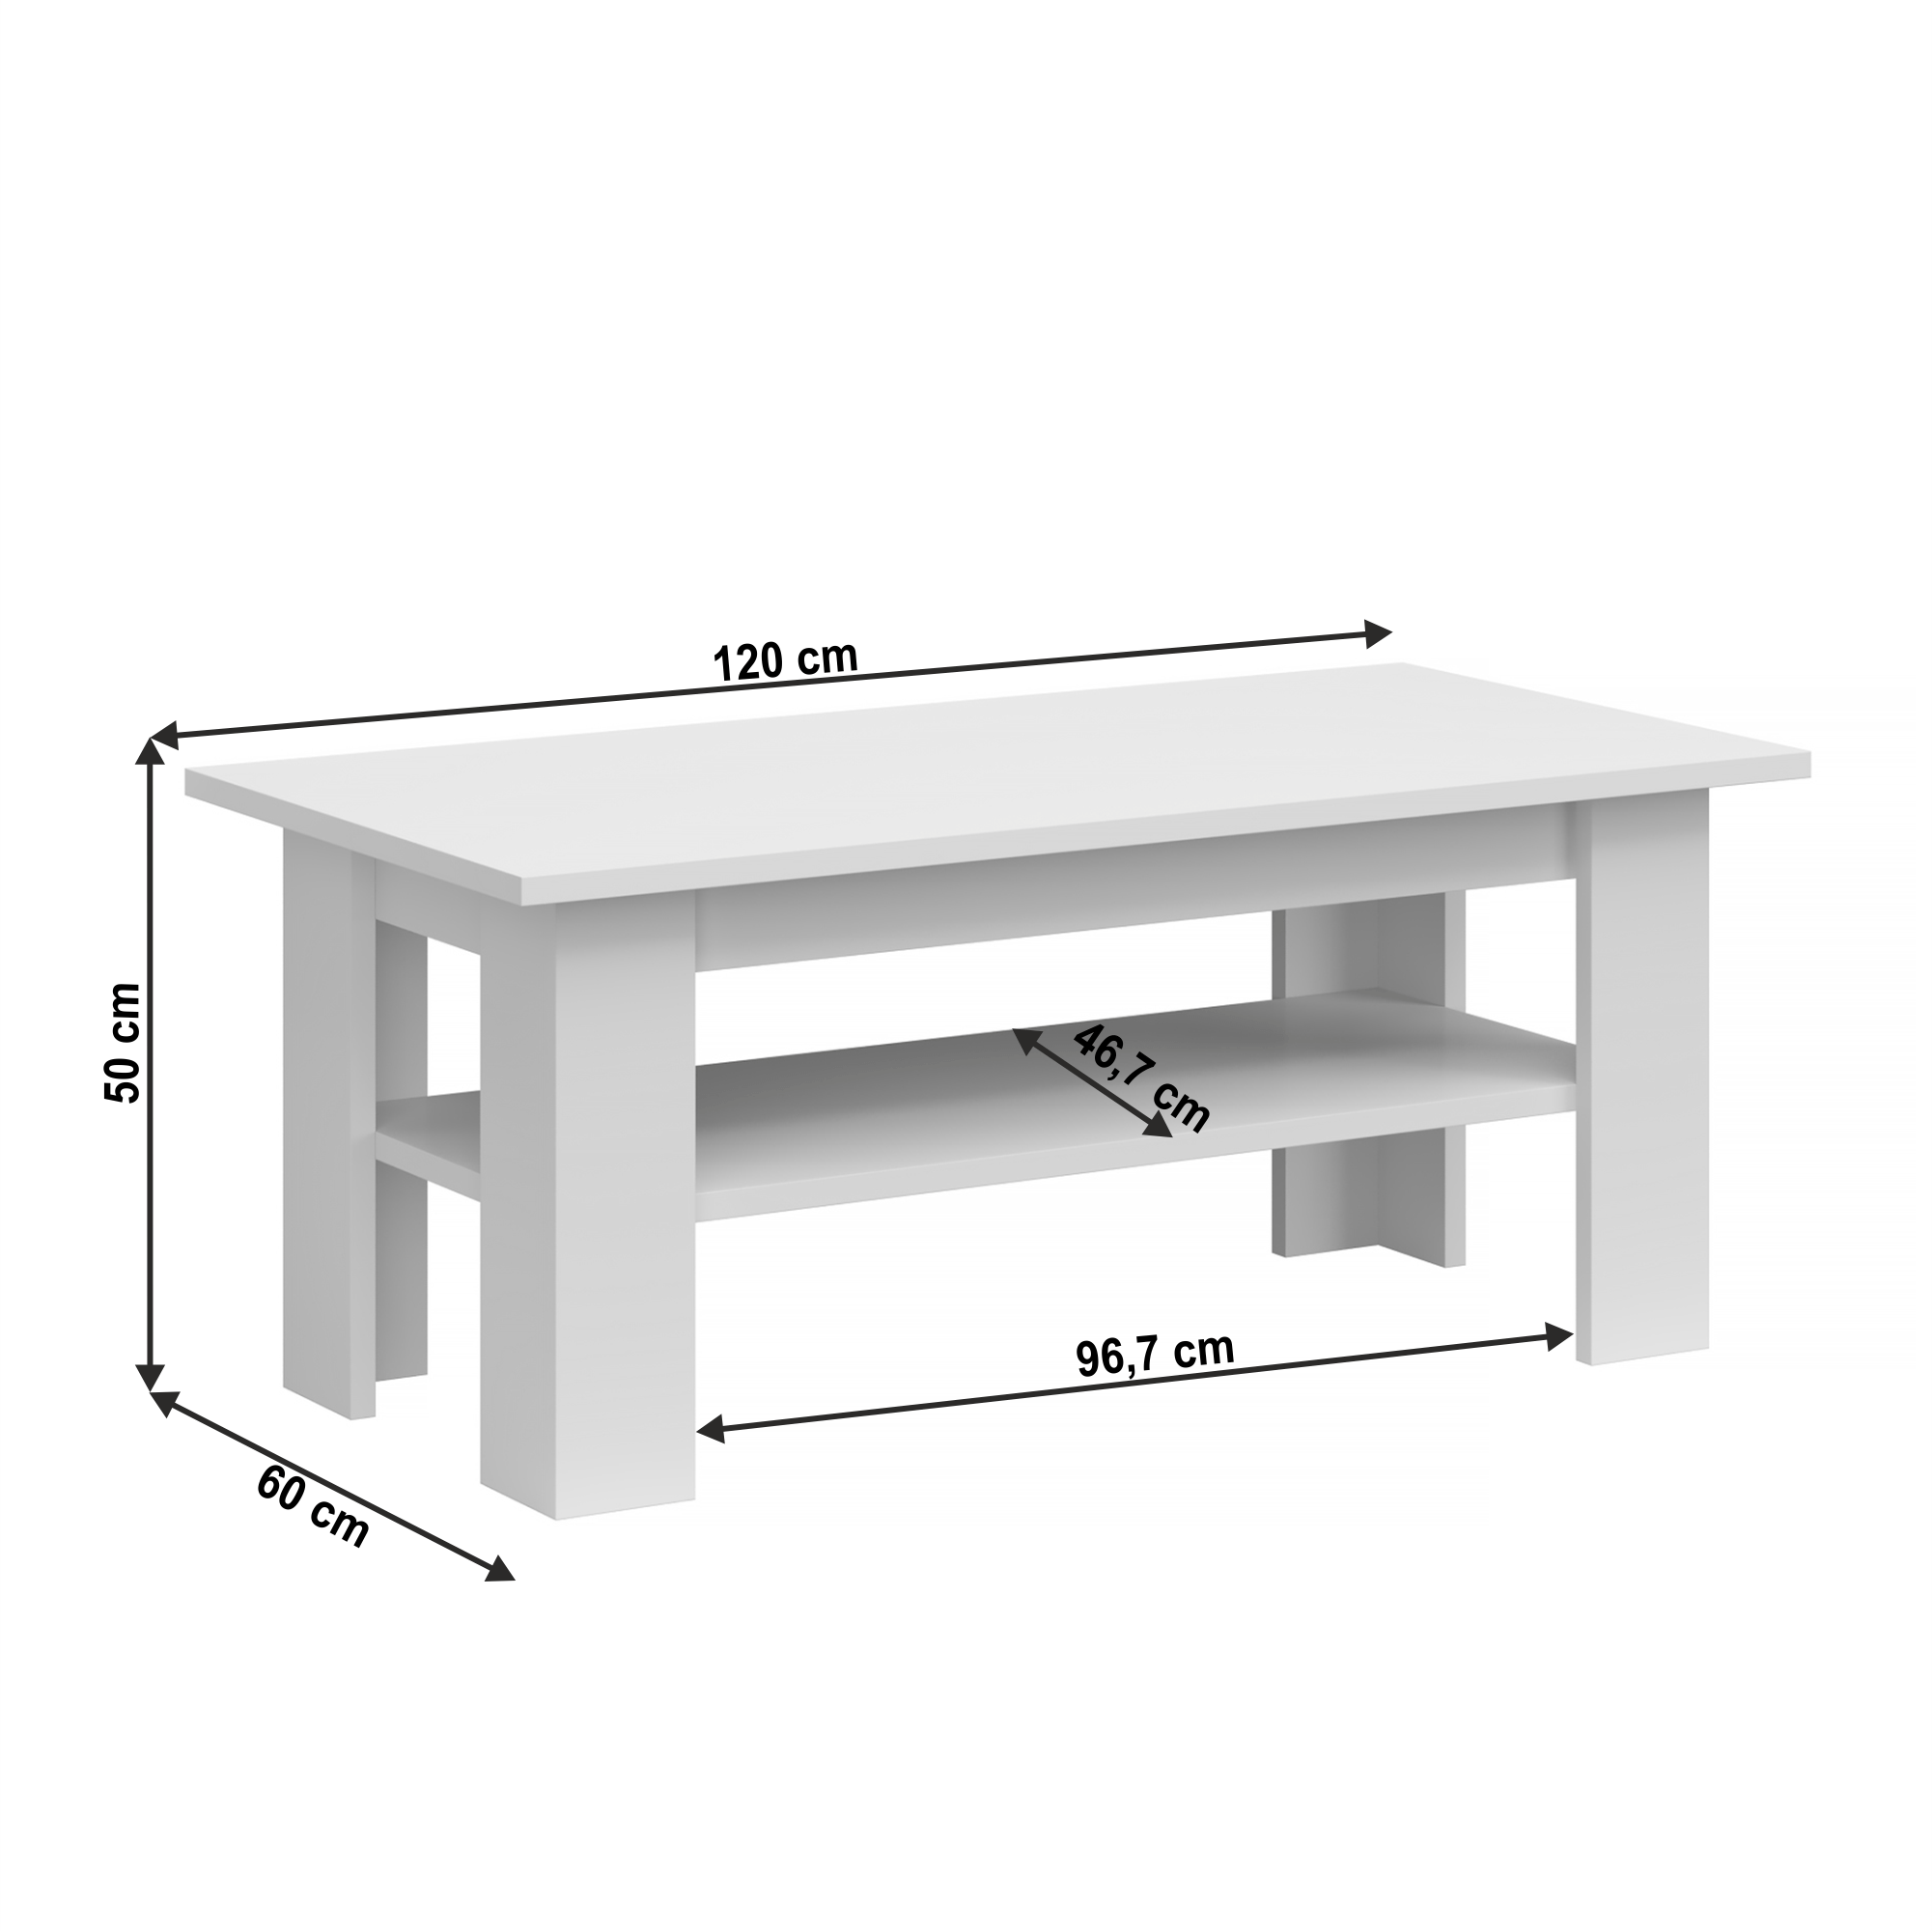 Konferenční stolek 120, bílá, JOLK